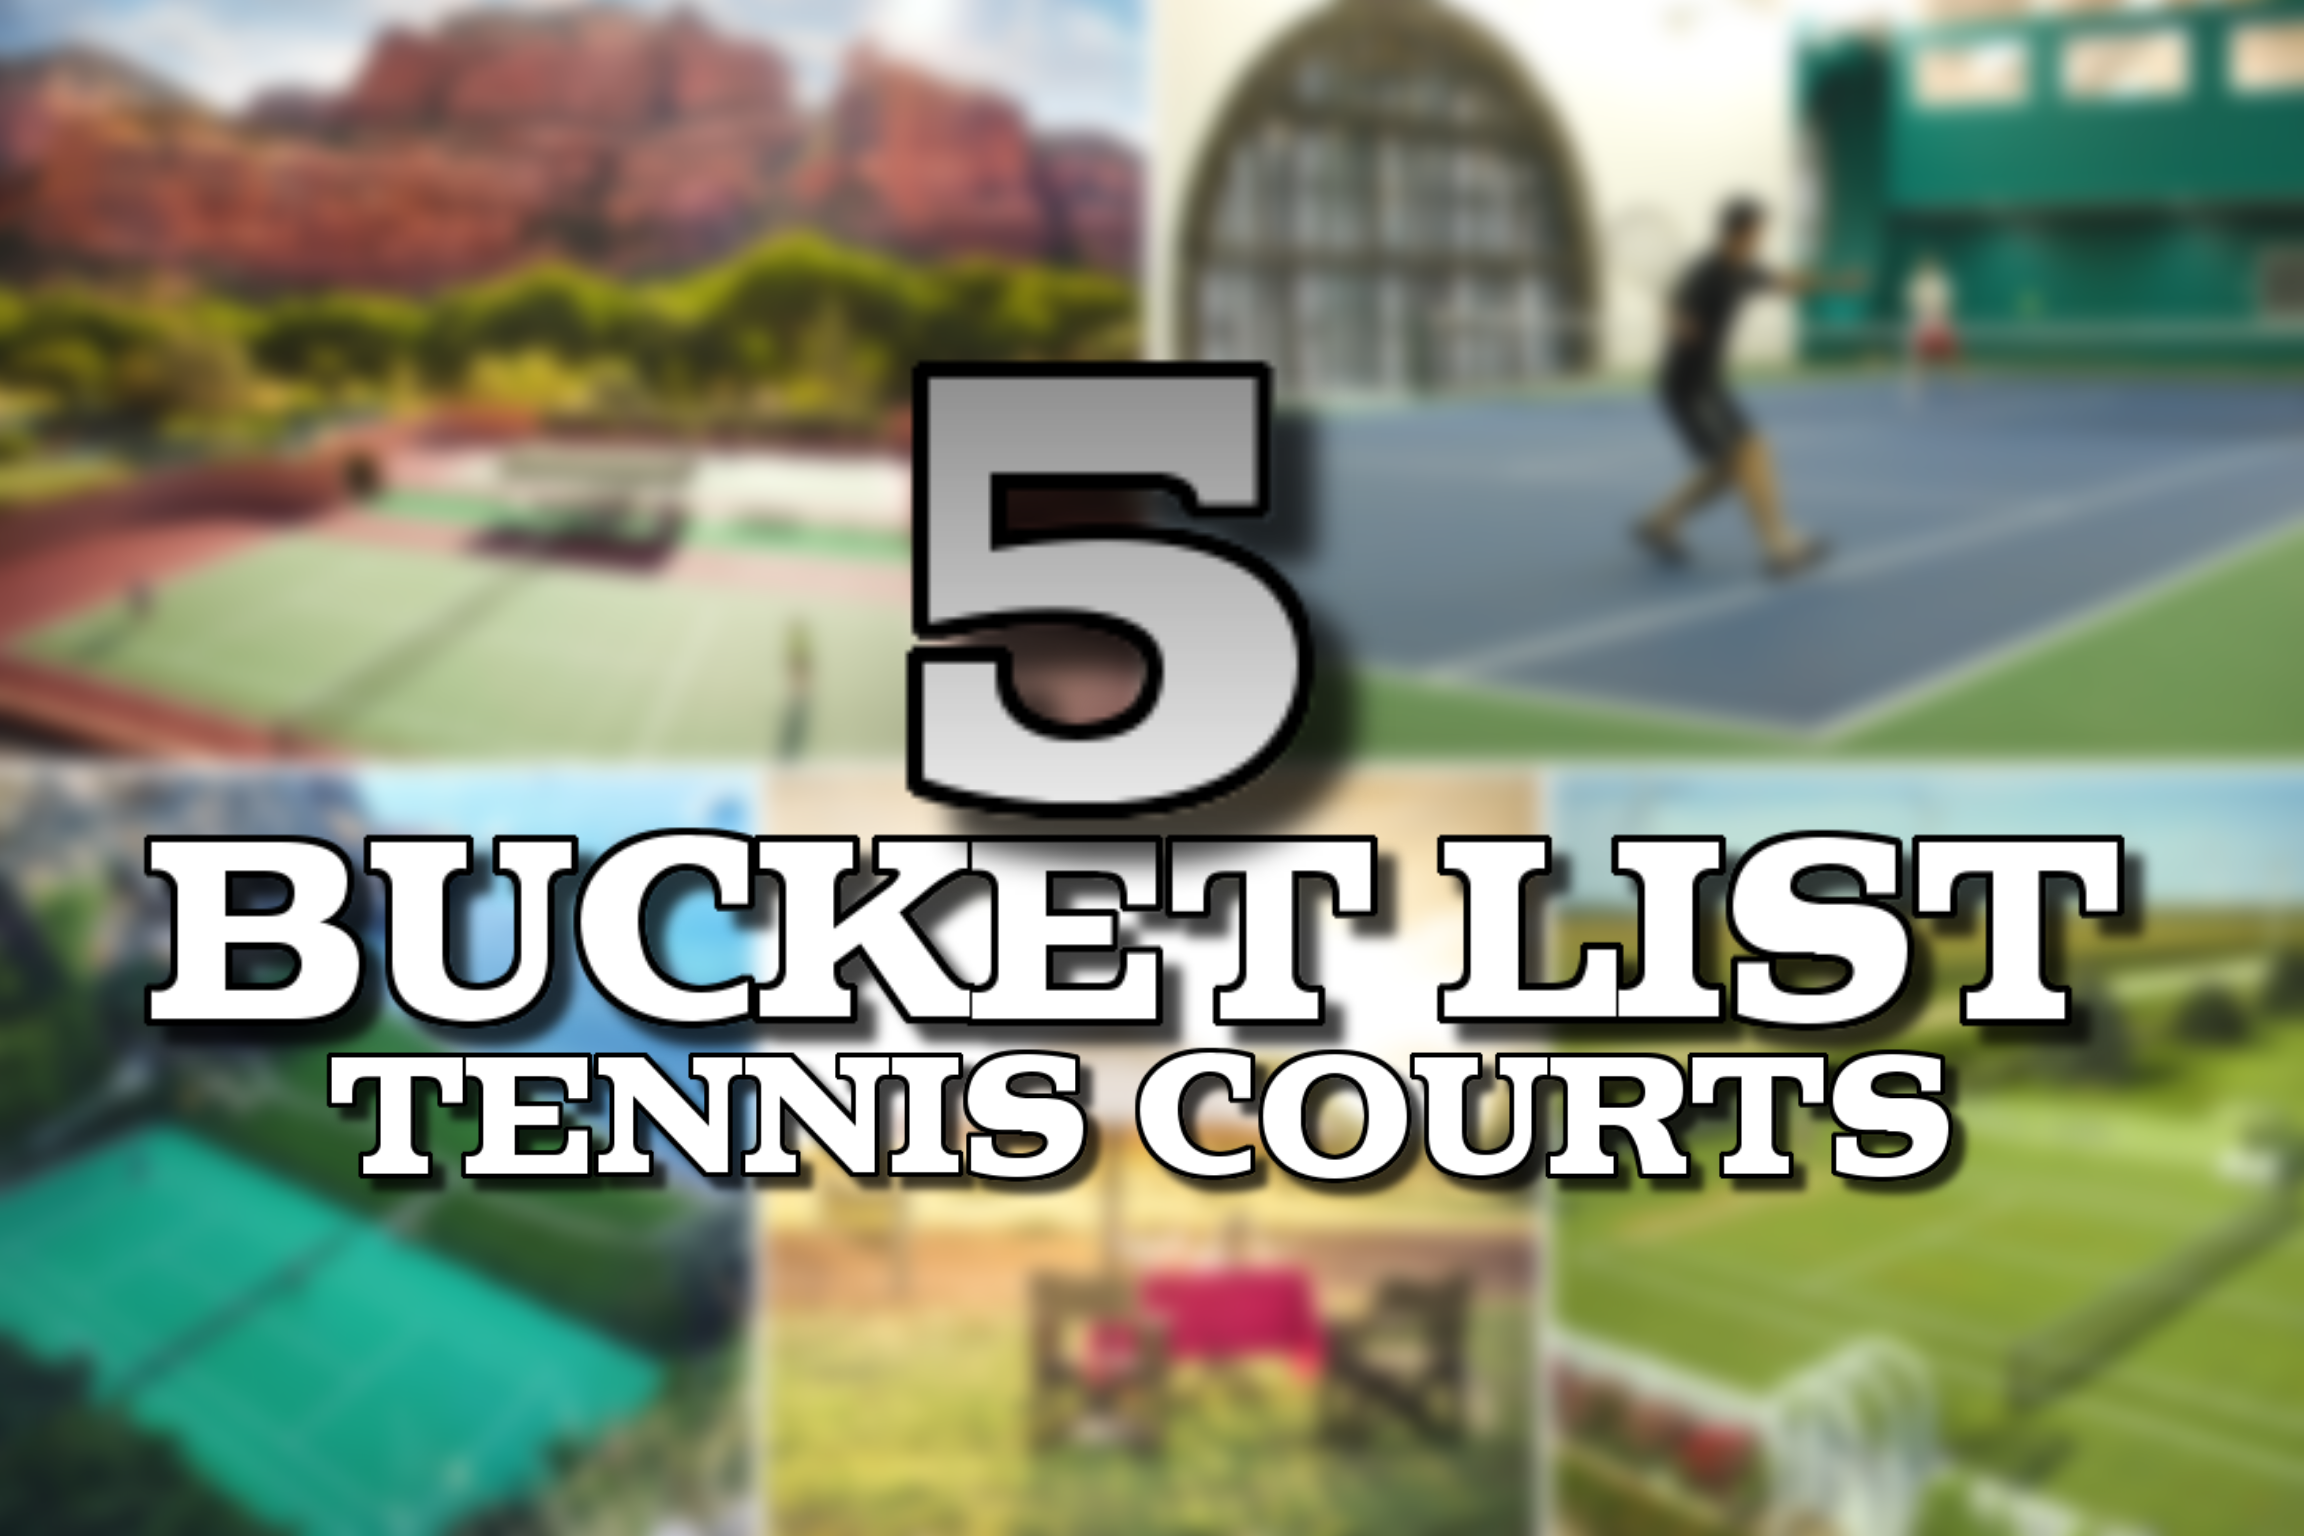 5 Bucket List Tennis Courts